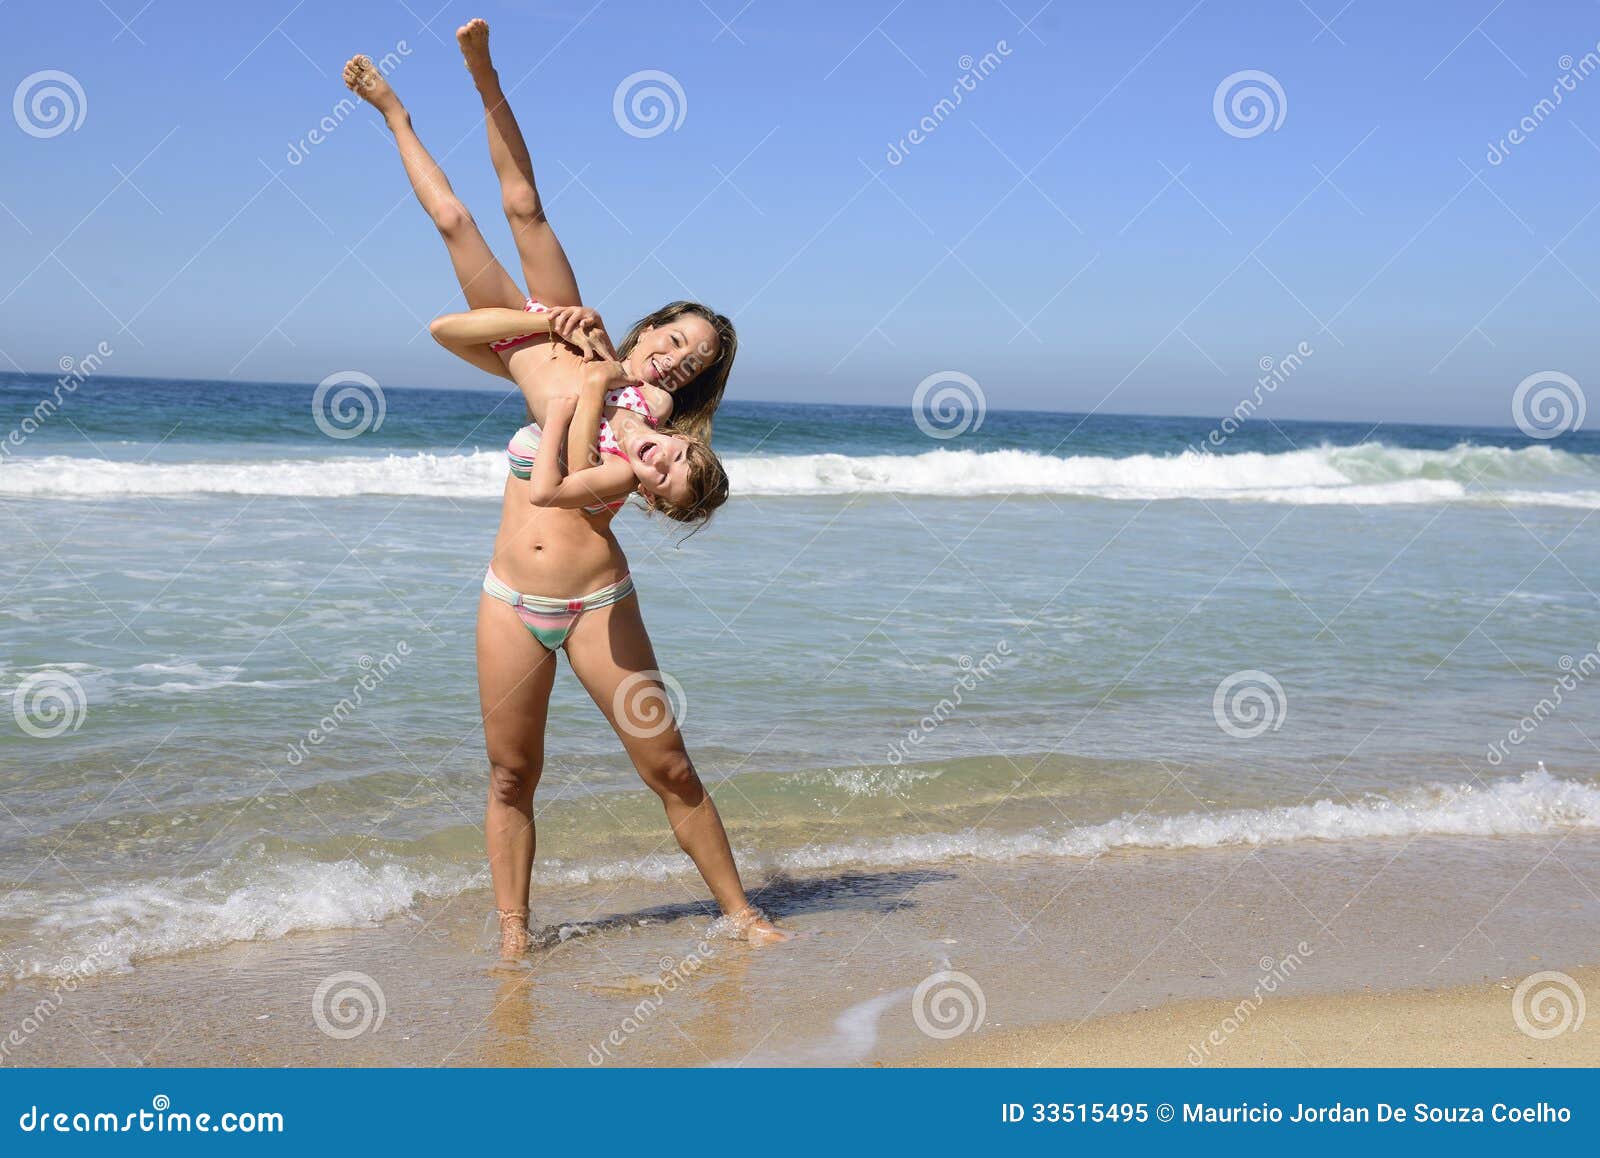 с детьми голым на пляж фото 102